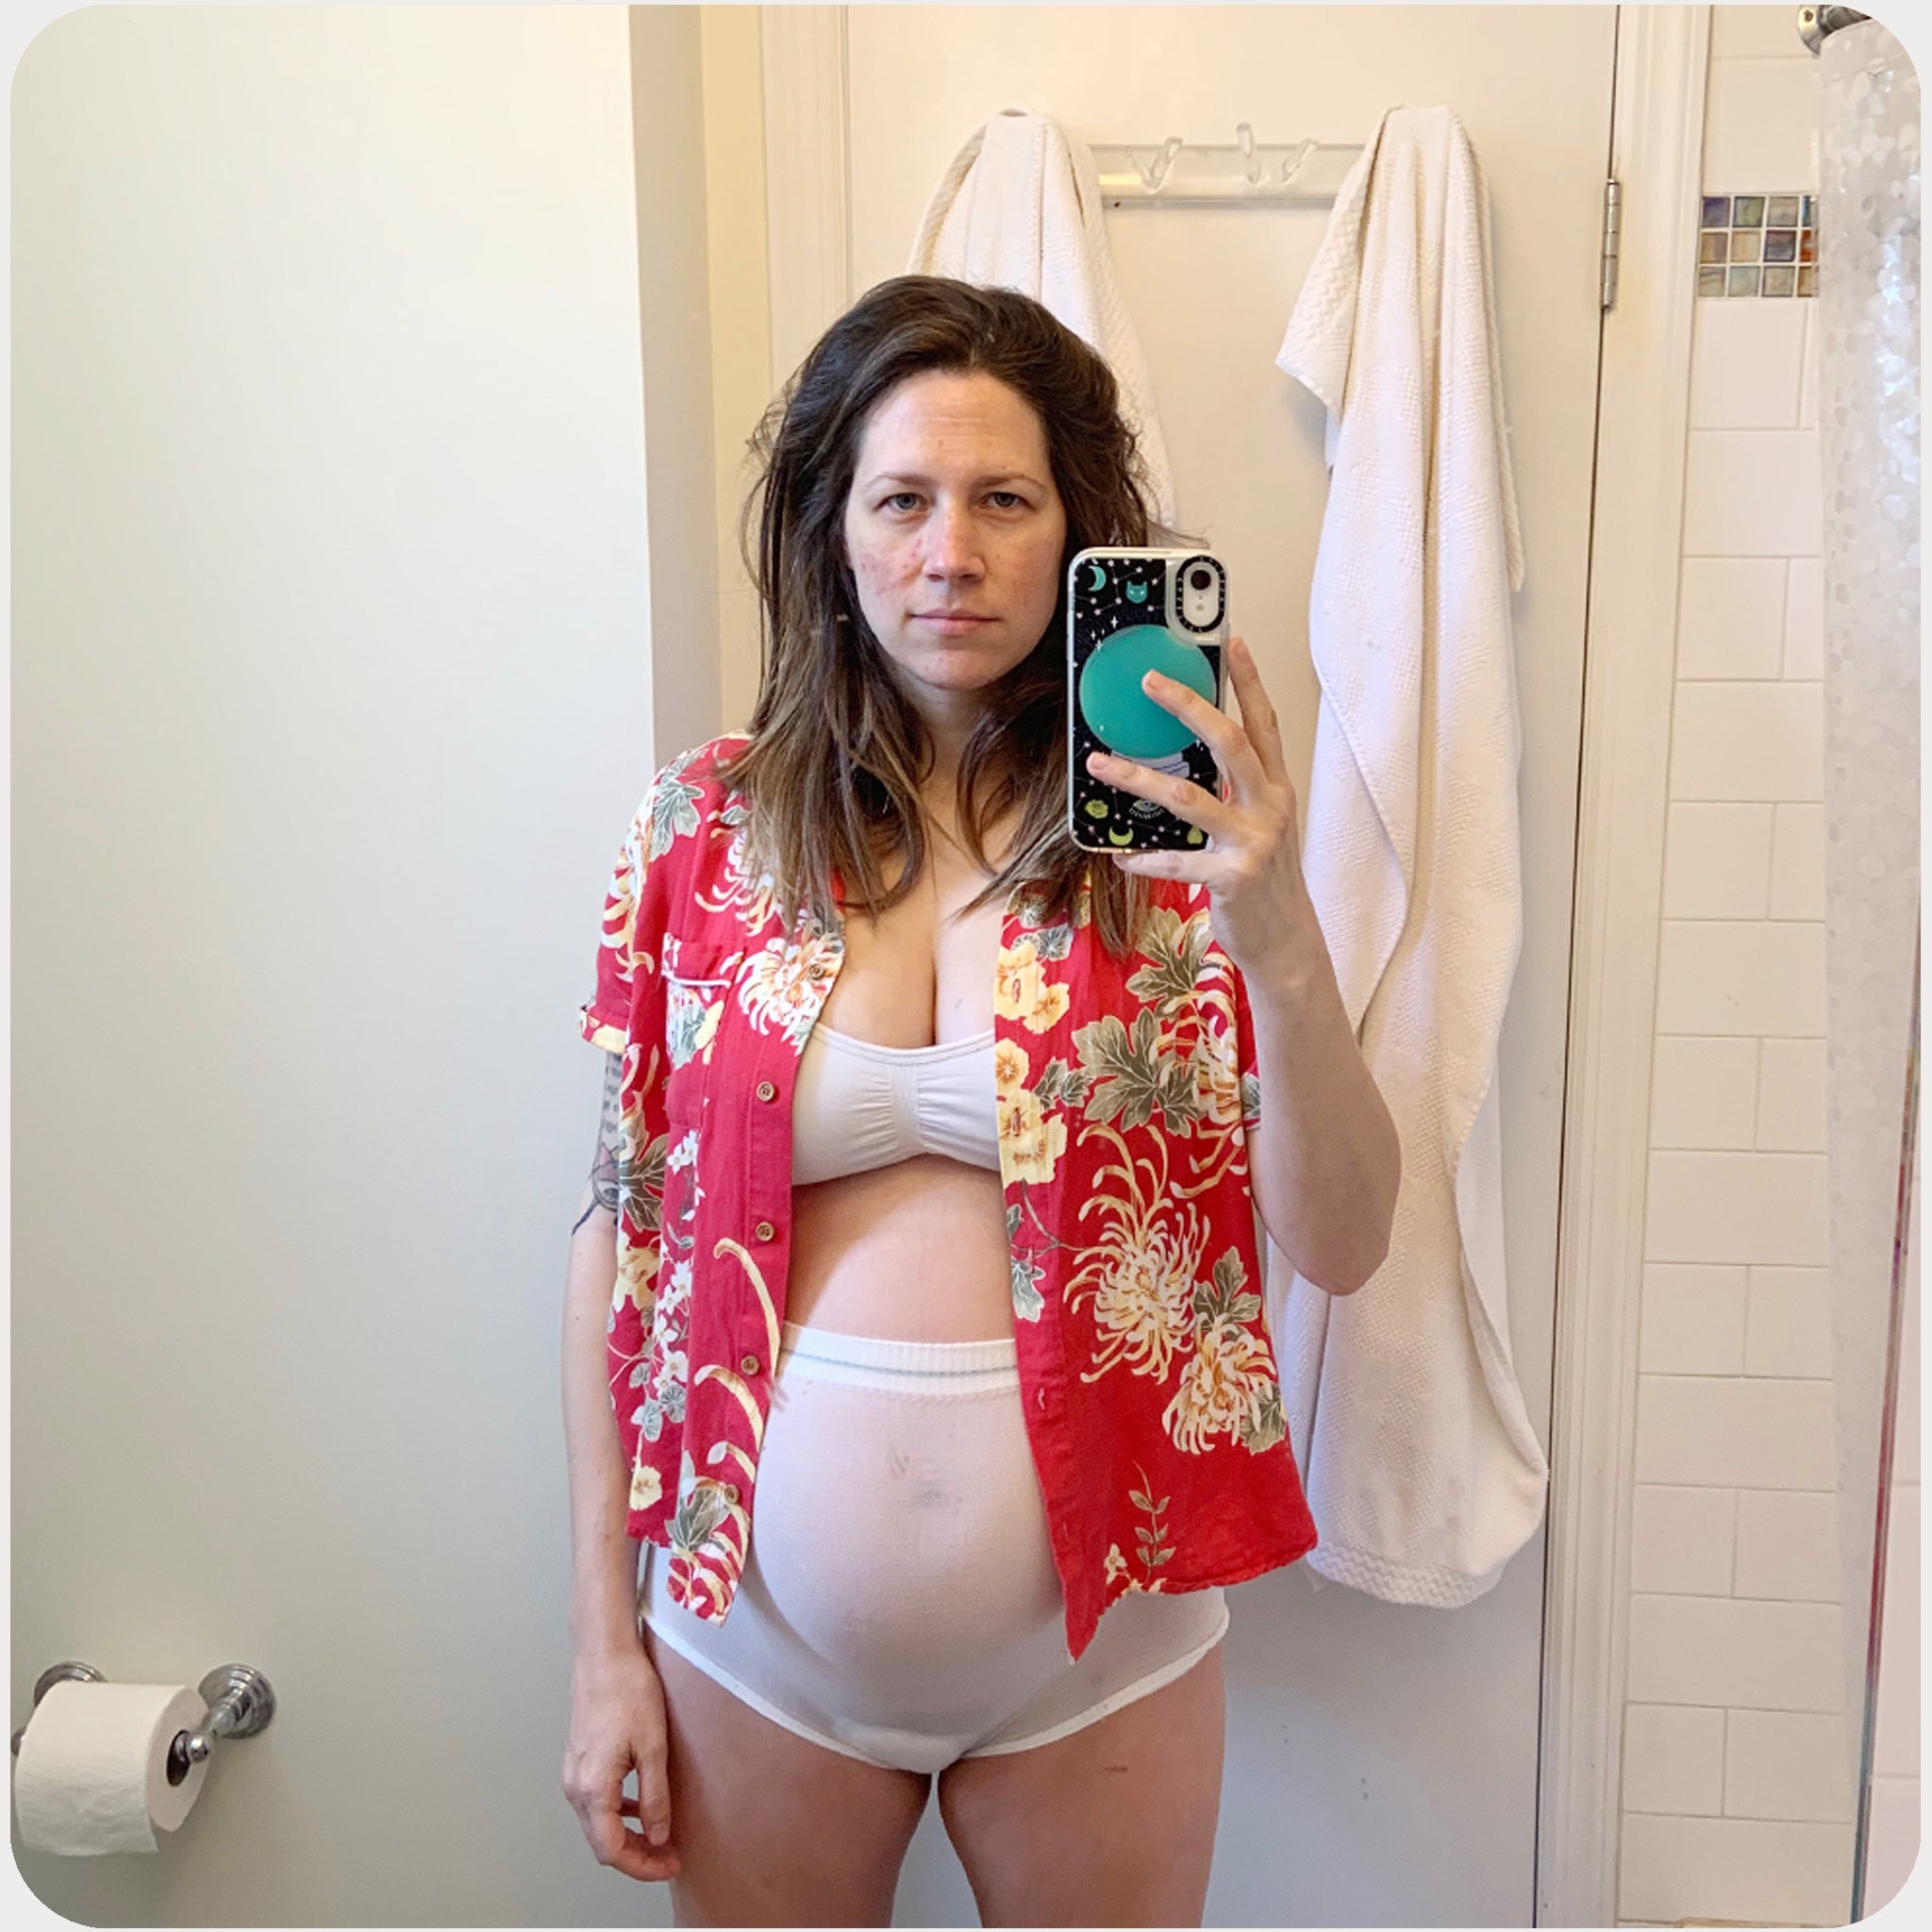 New mother in postpartum underwear days after giving birth